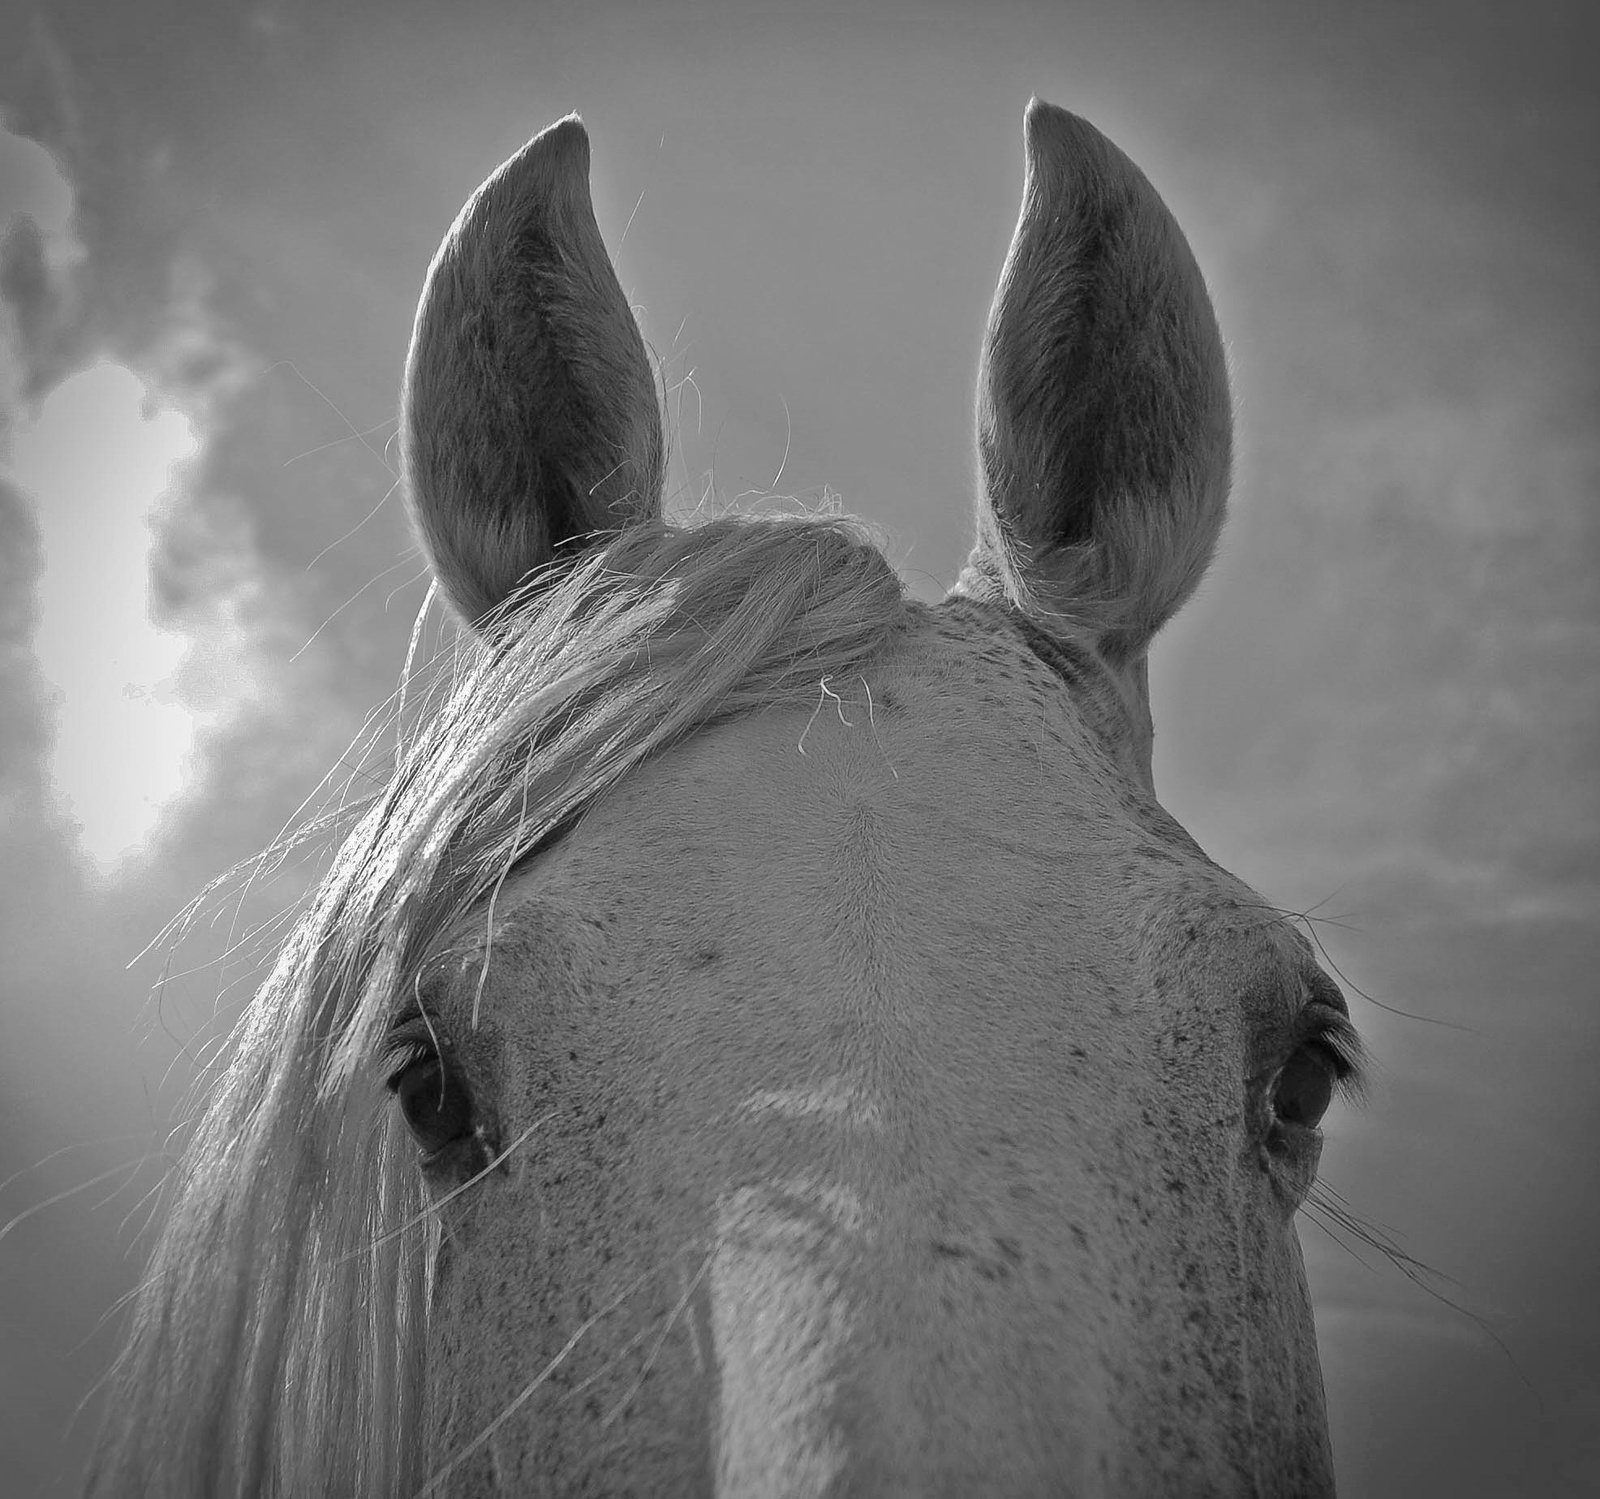 "A ló két szeme közt rejlik a világ minden kincse"